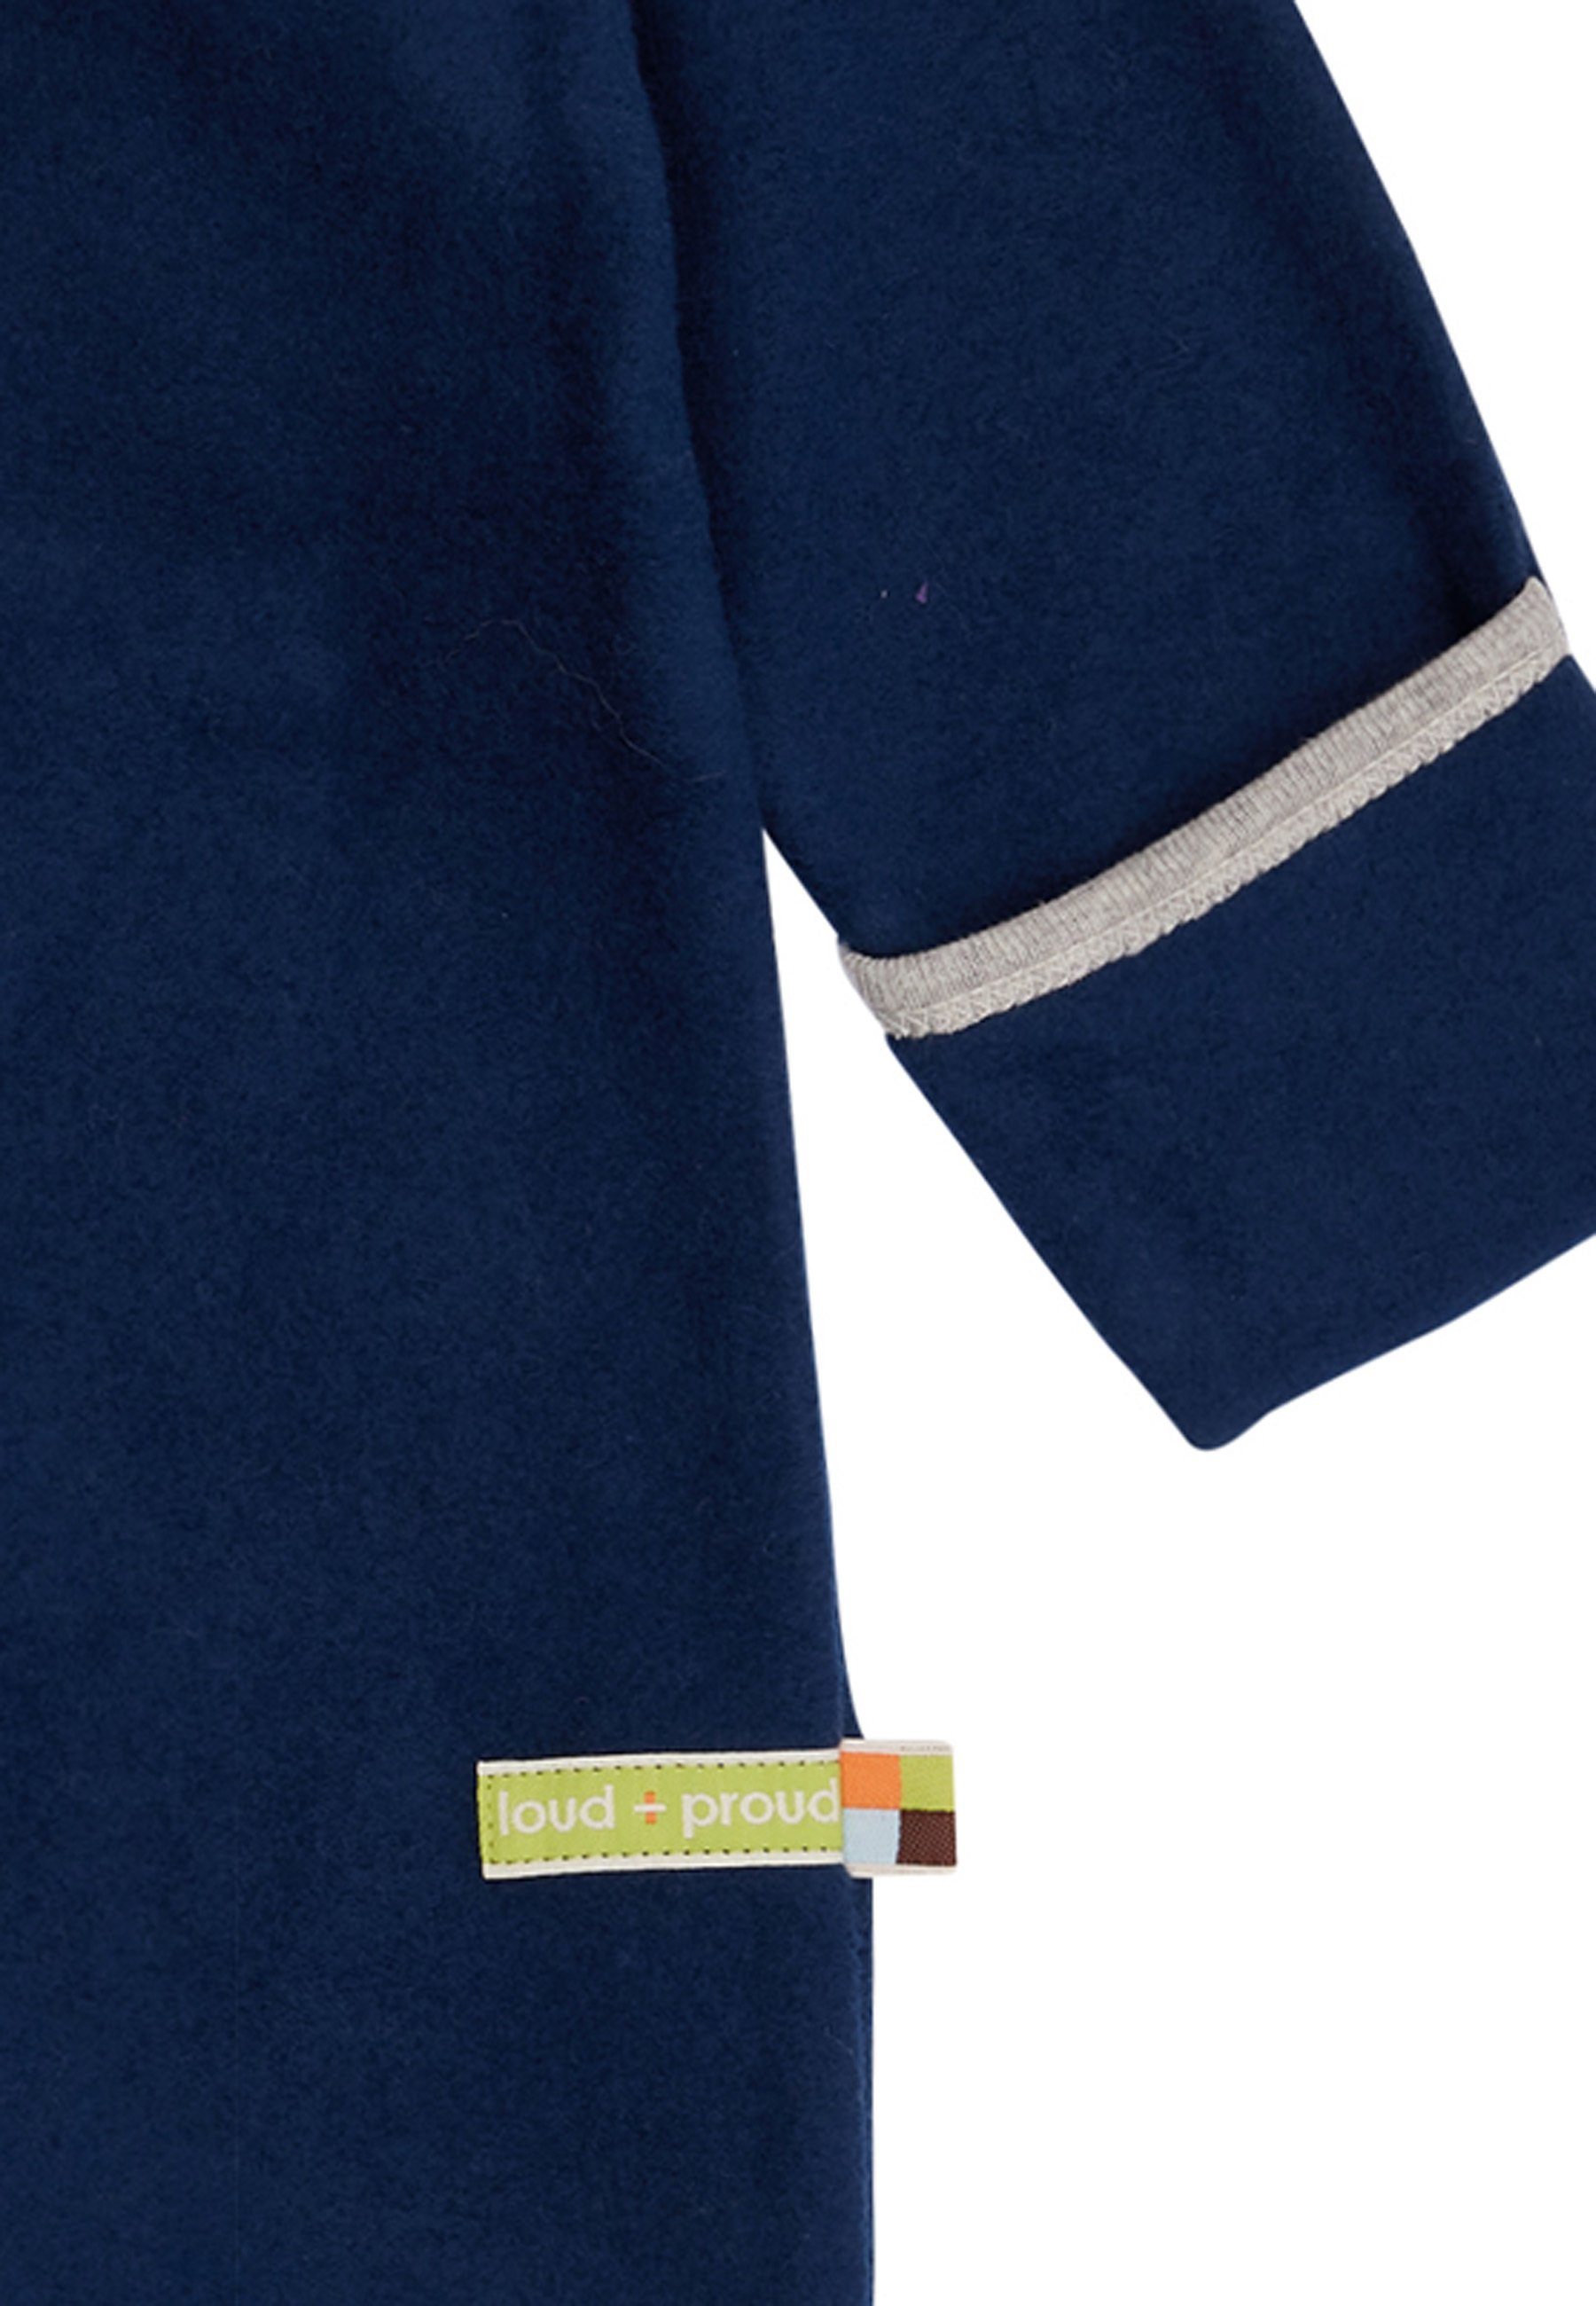 loud + proud Strampler Fleece Bio-Baumwolle GOTS zertifizierte Ultramarine